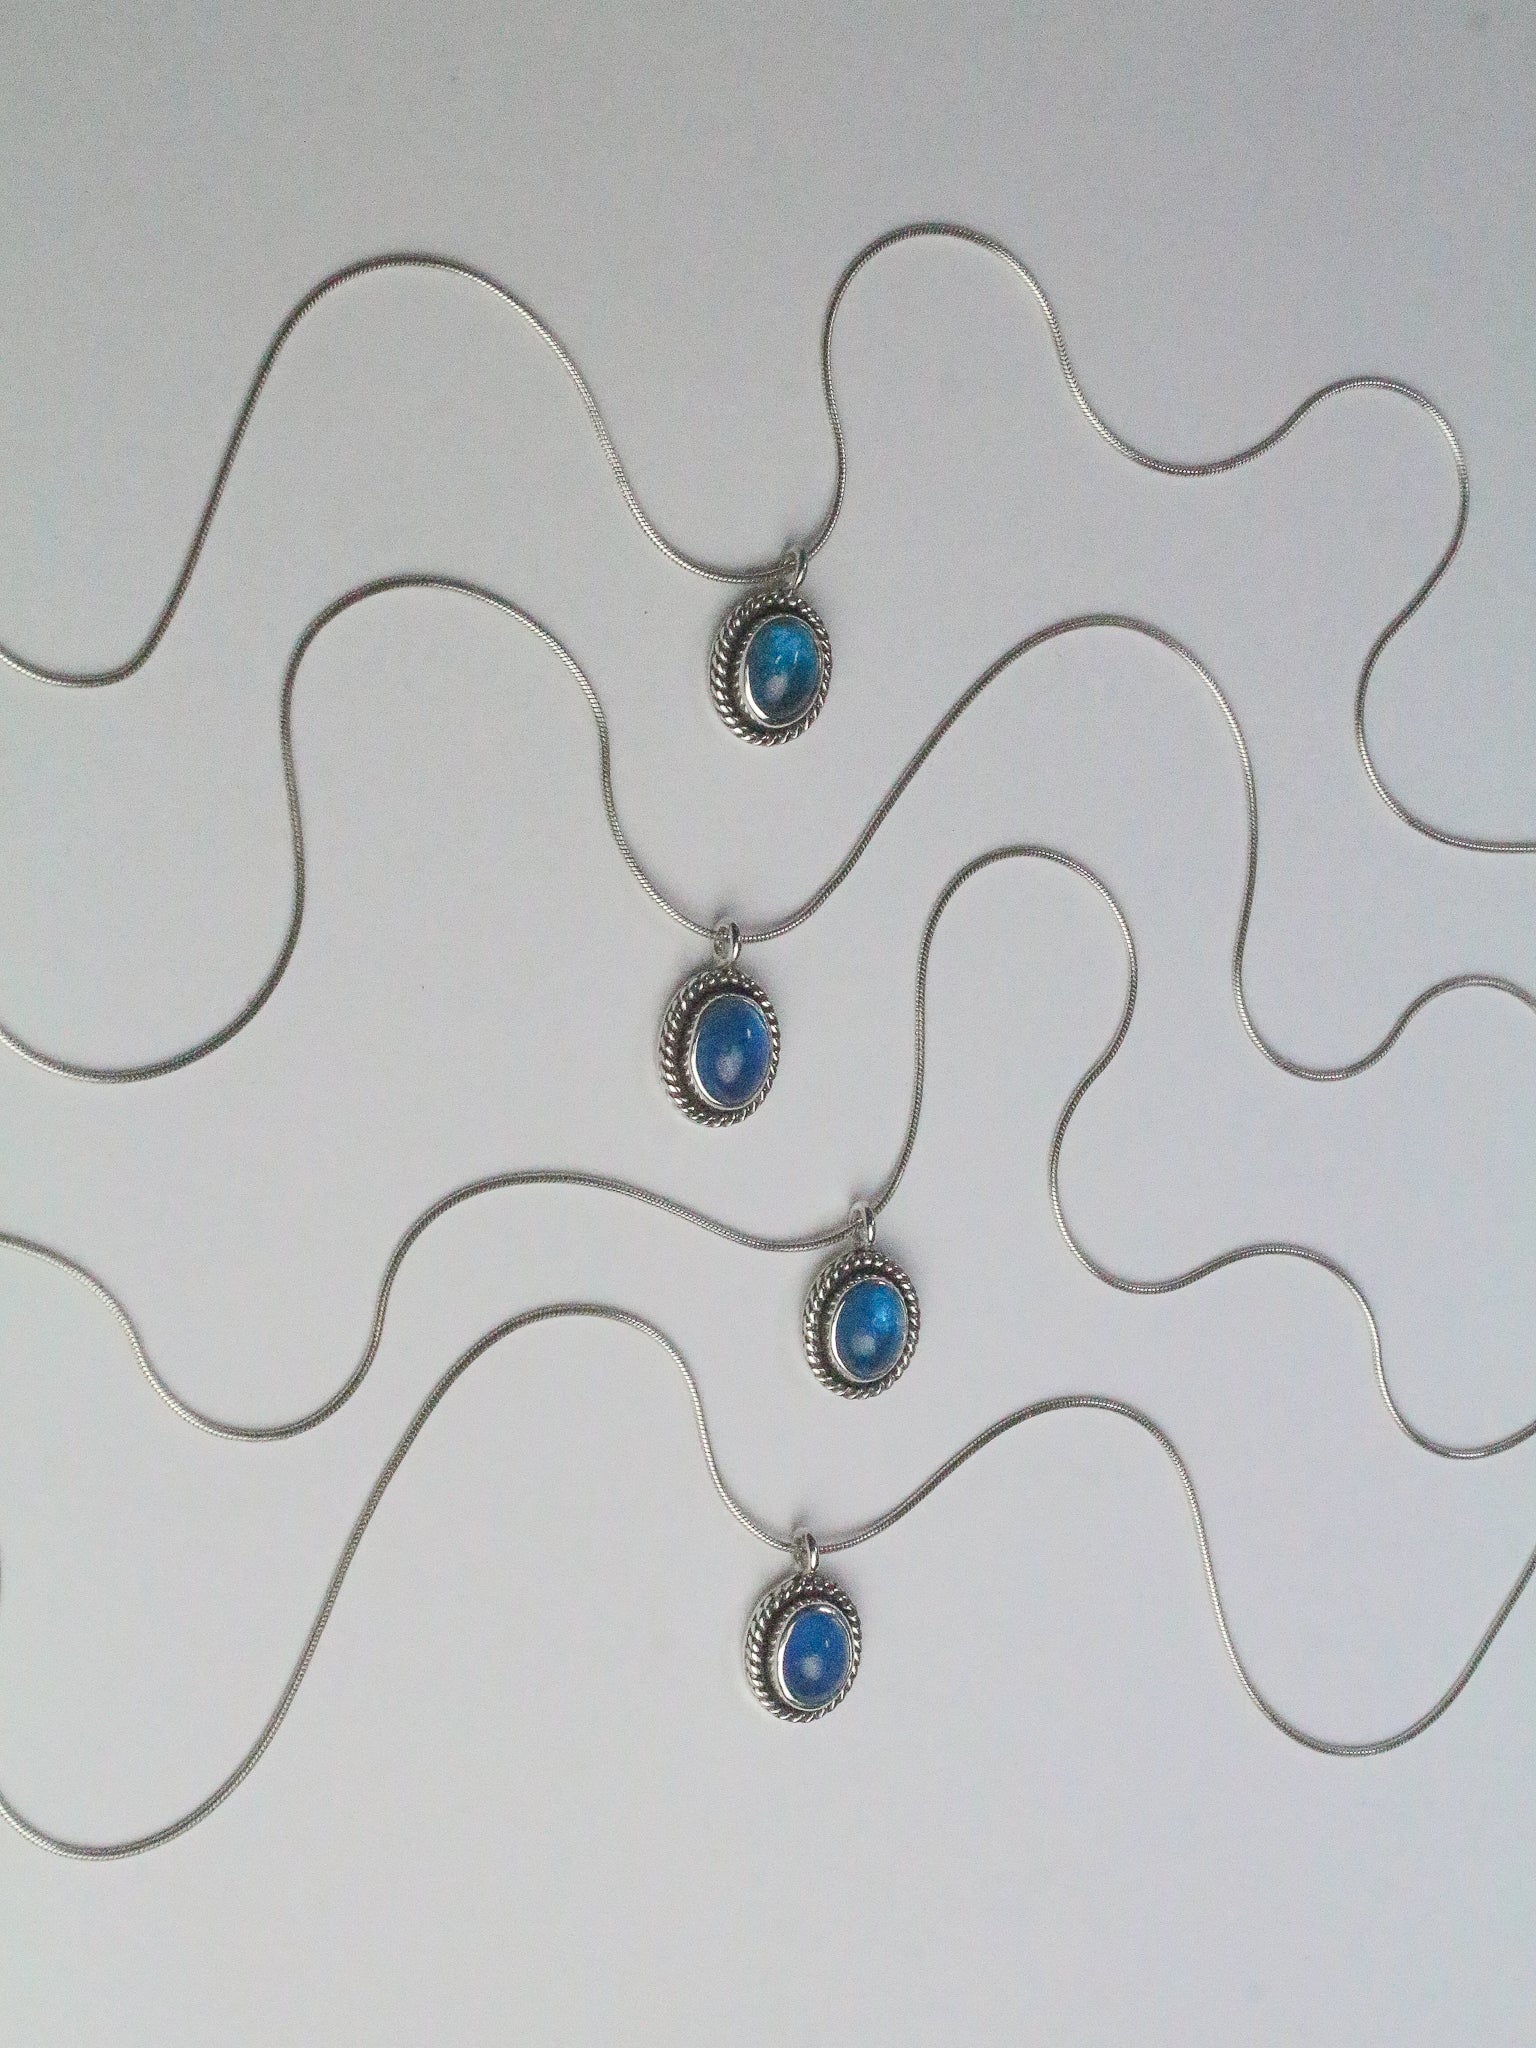 Blue Apatite Choker Necklaces